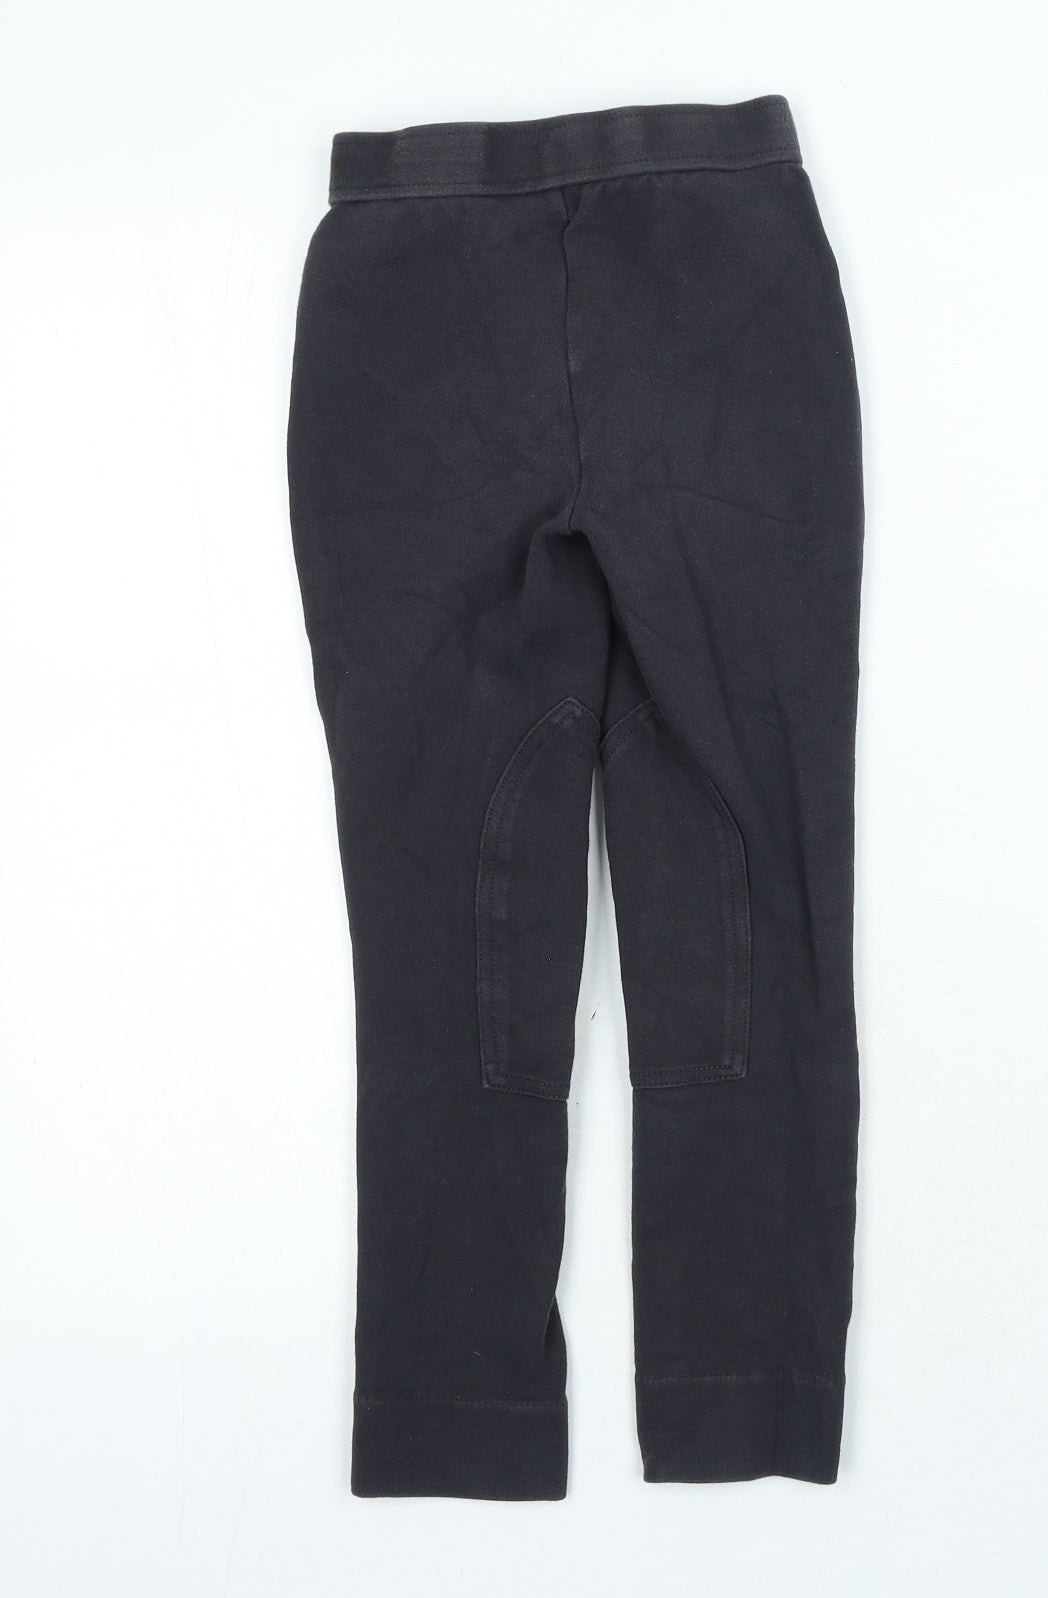 Saxon Girls Grey Cotton Jegging Trousers Size S Regular Zip